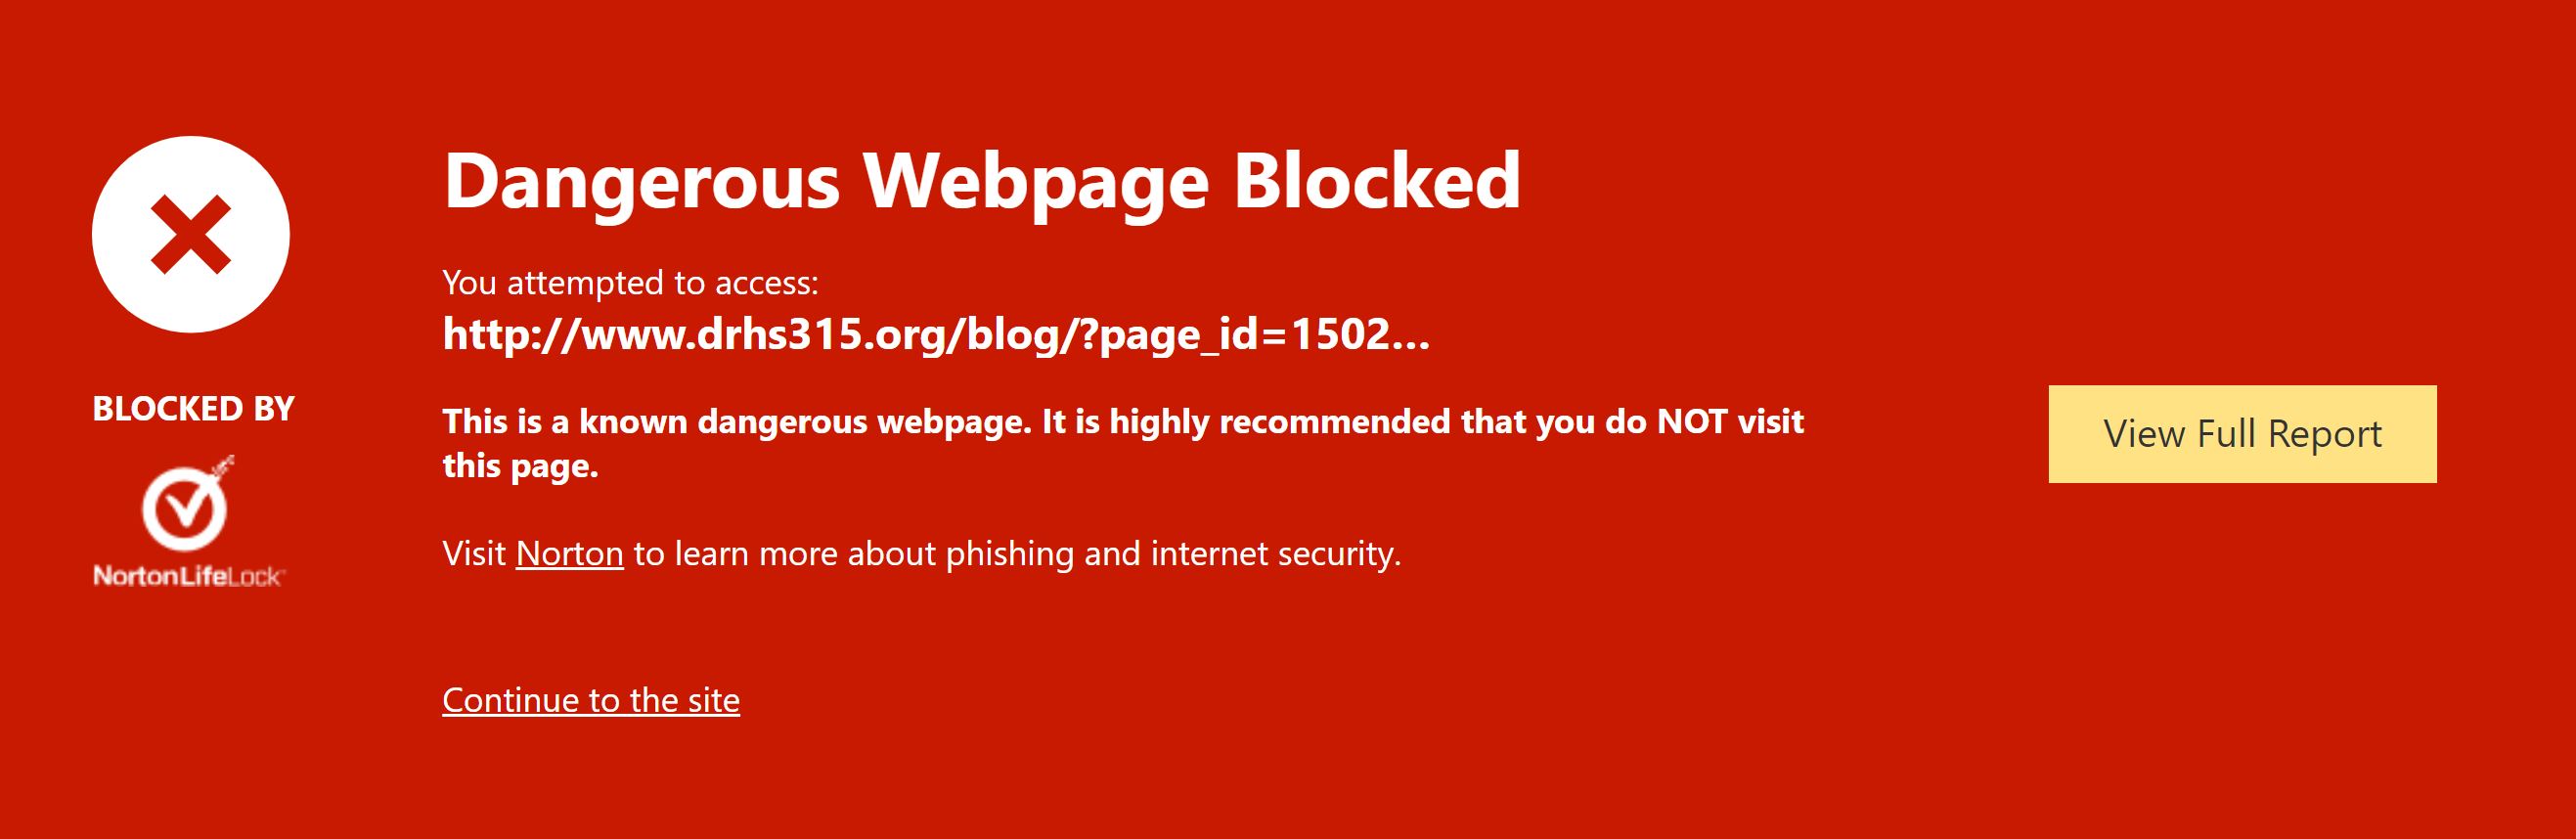 315Paypal blocked site.JPG